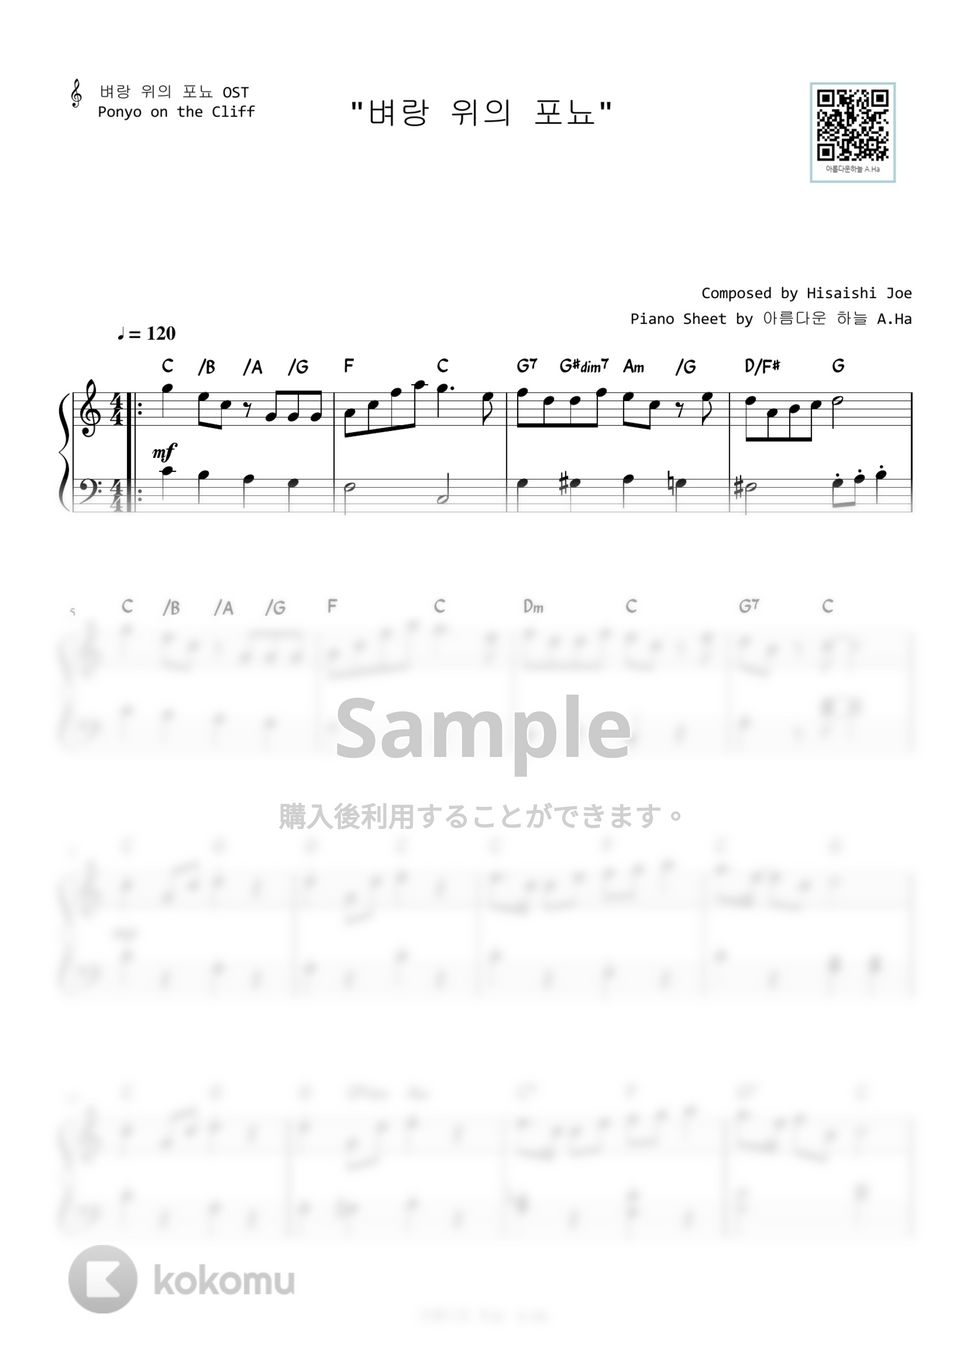 崖の上のポニョ - 崖の上のポニョ (Level 1 - Easy Version) by A.Ha